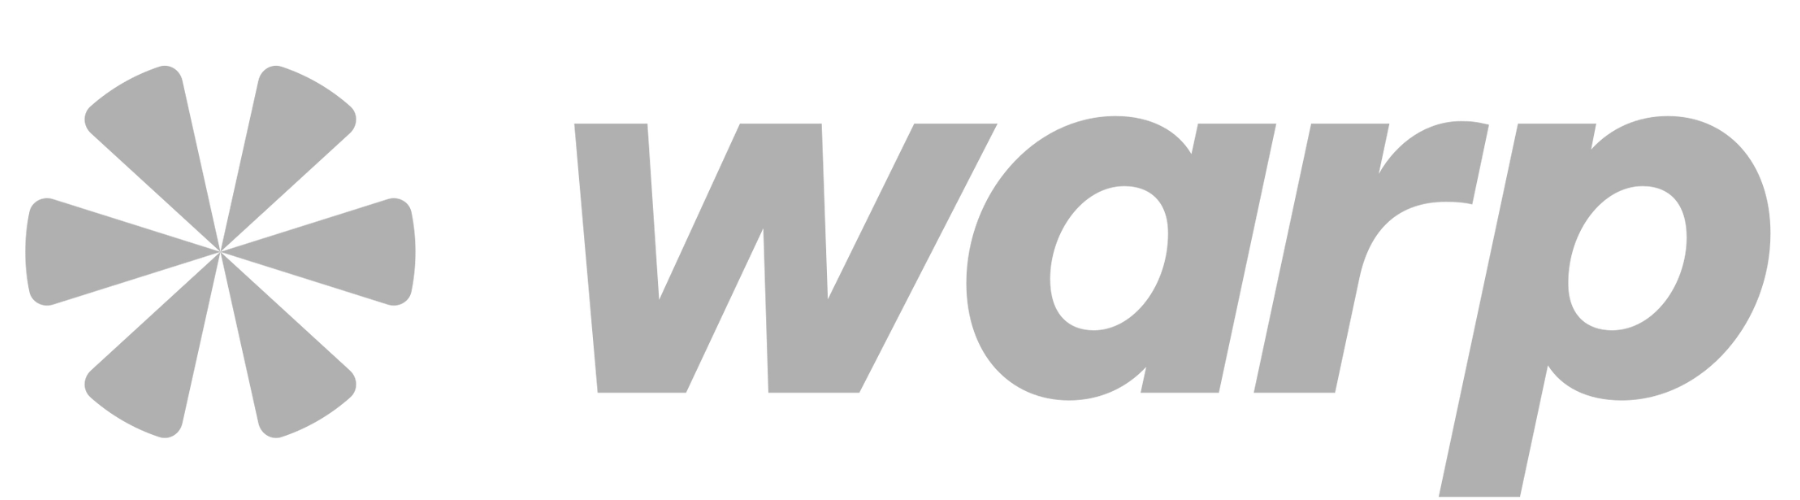 Warp logo